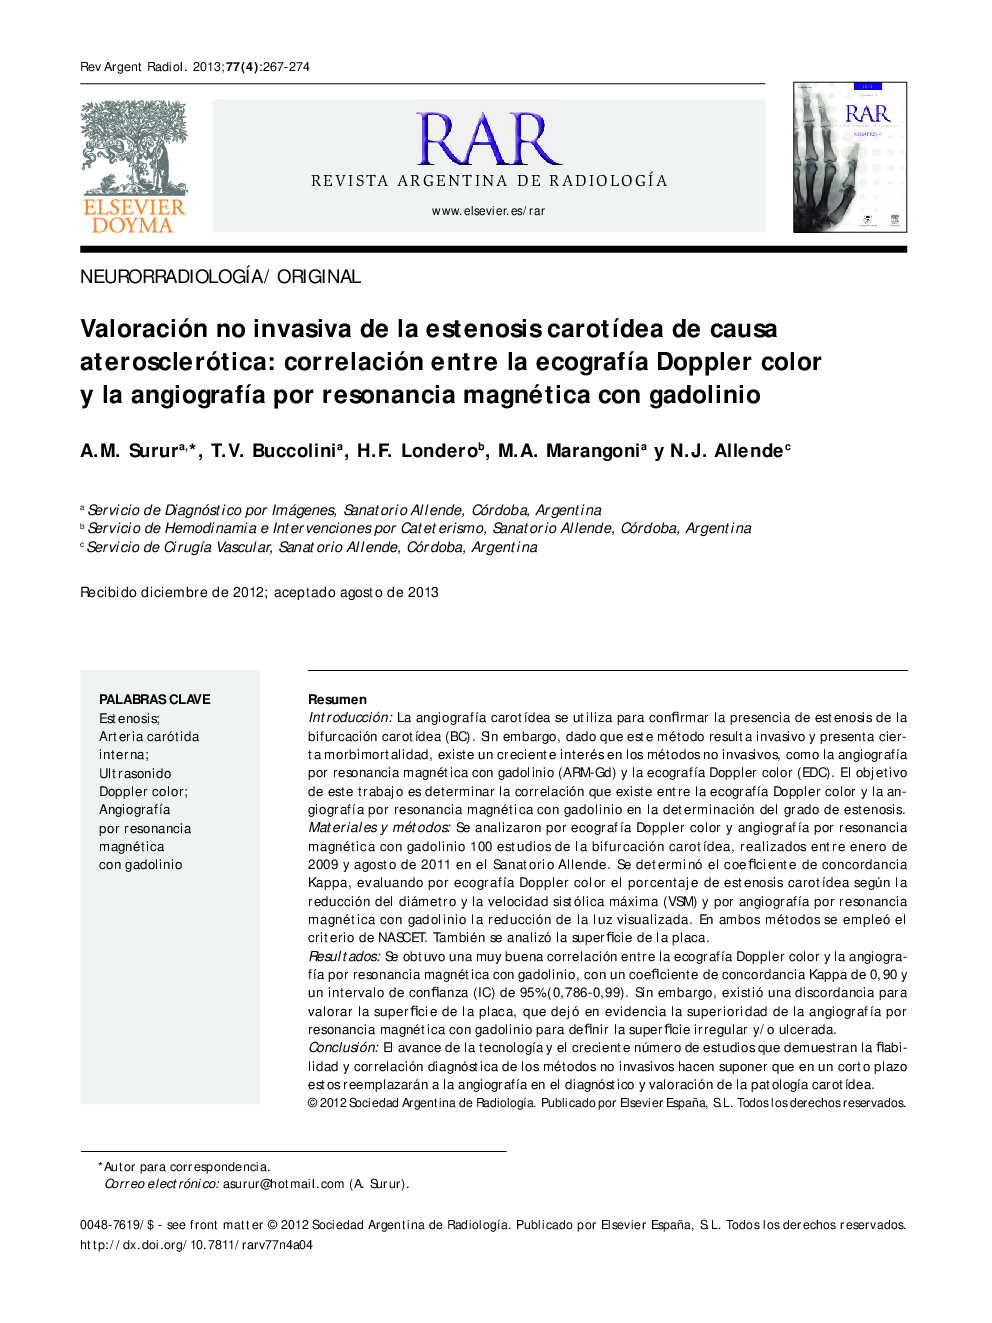 Valoración no invasiva de la estenosis carotídea de causa aterosclerótica: correlación entre la ecografía Doppler color y la angiografía por resonancia magnética con gadolinio